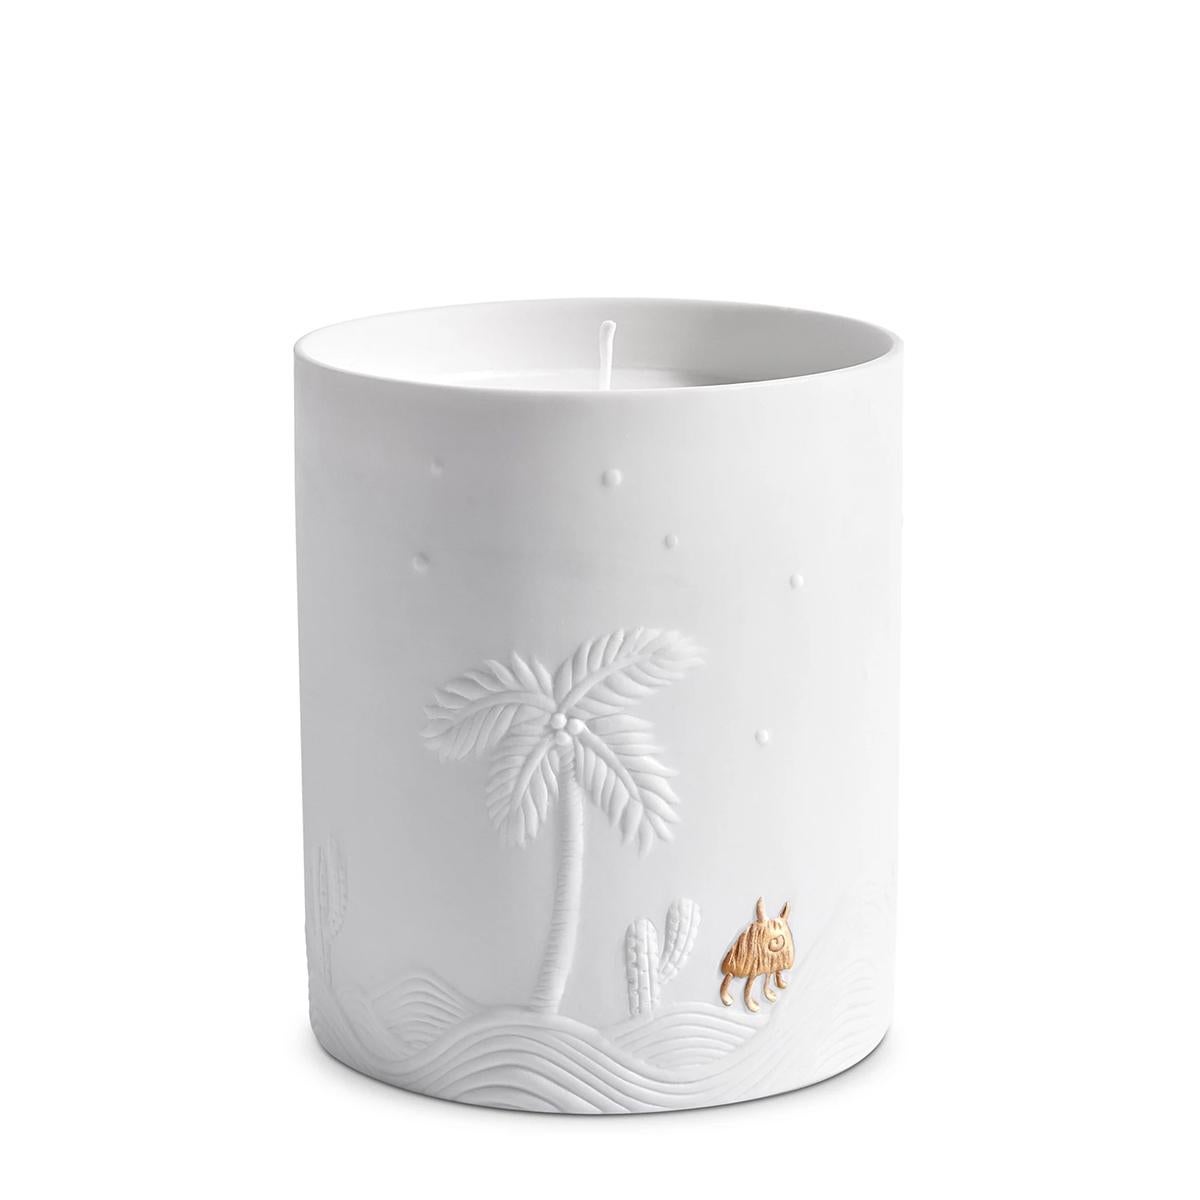 Kerze Desert White aus Porzellan. 
Aus weißem Porzellan. Paraffinwachs einschließen 
mit einfachem Docht. Wird in einer luxuriösen Geschenkbox geliefert.